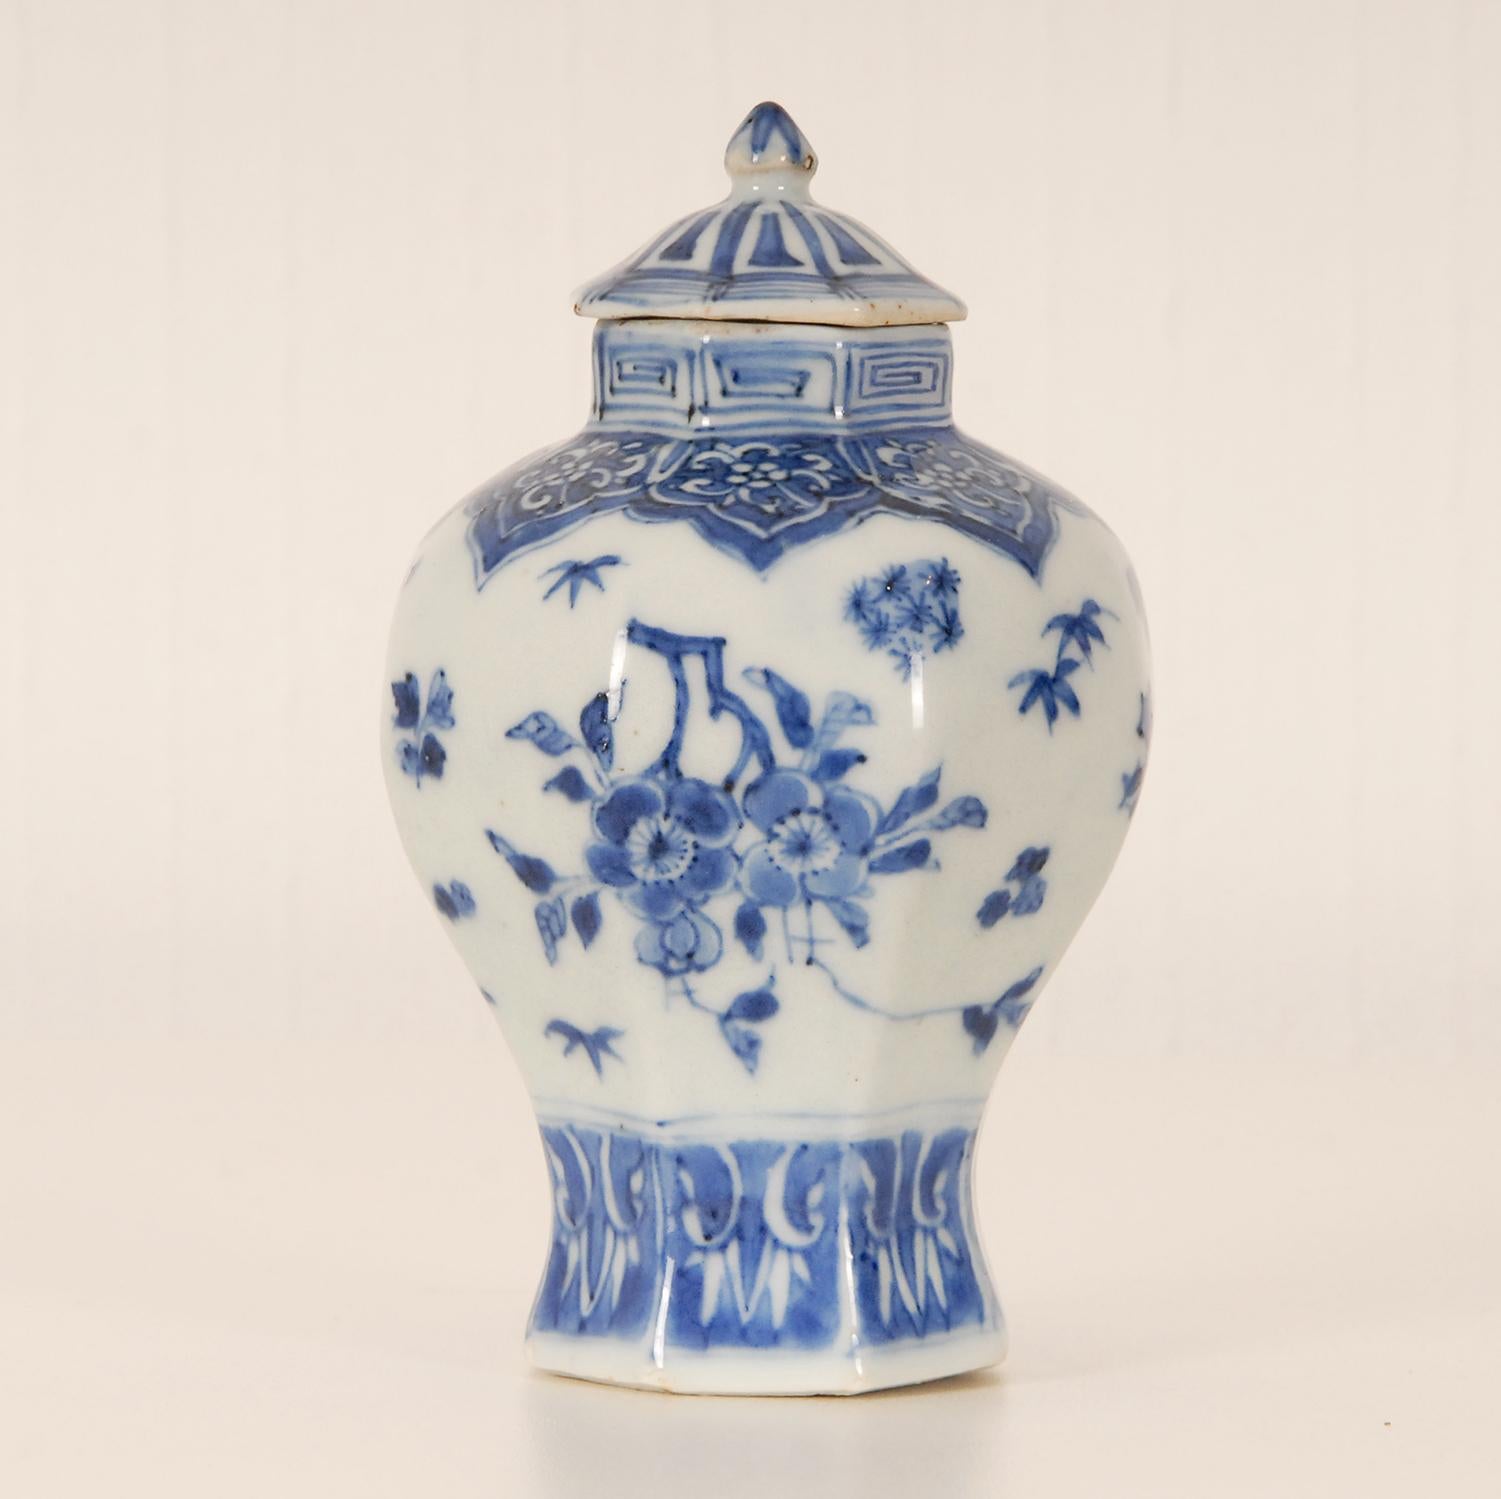 Porcelaine chinoise ancienne du 17ème siècle - Vase couvert en céramique
Origine : Chine, Période Late Ming, approx 1630 - 1645
Forme - Vase balustre octogonal - jarre avec couvercle
Couleur : Bleu et blanc
Enti entièrement fabriqué à la main et déc